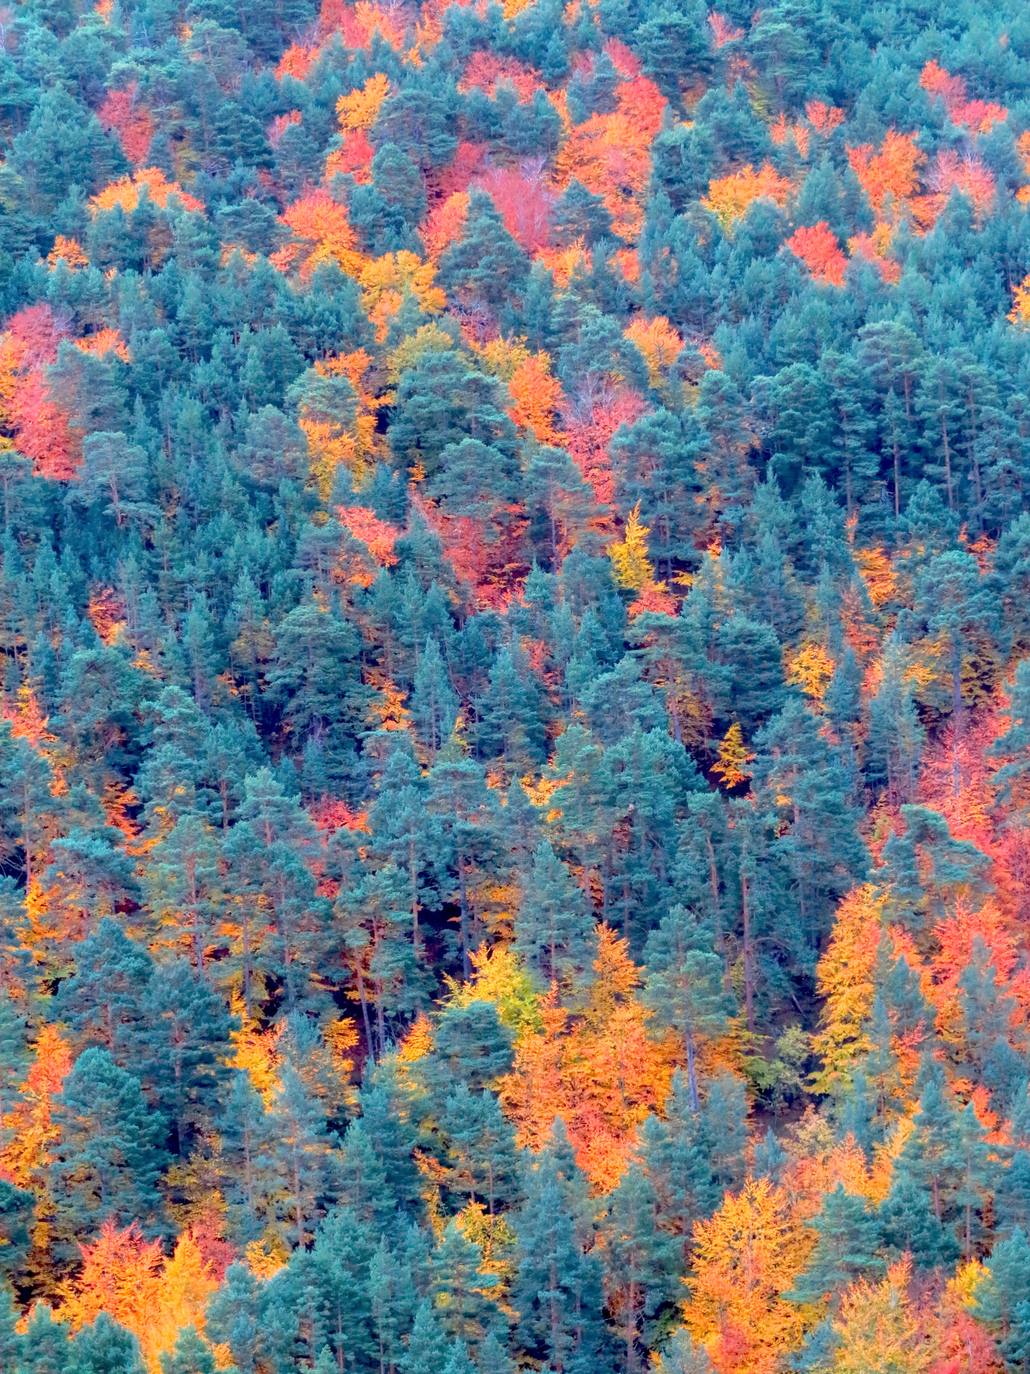 Con el temporal arreciando, el otoño da sus últimos suspiros en los Cameros riojanos dejando como testimonio bonitas estampas de bosques encendidos en llamativos colores. Un lujo para el paseo y la fotografía